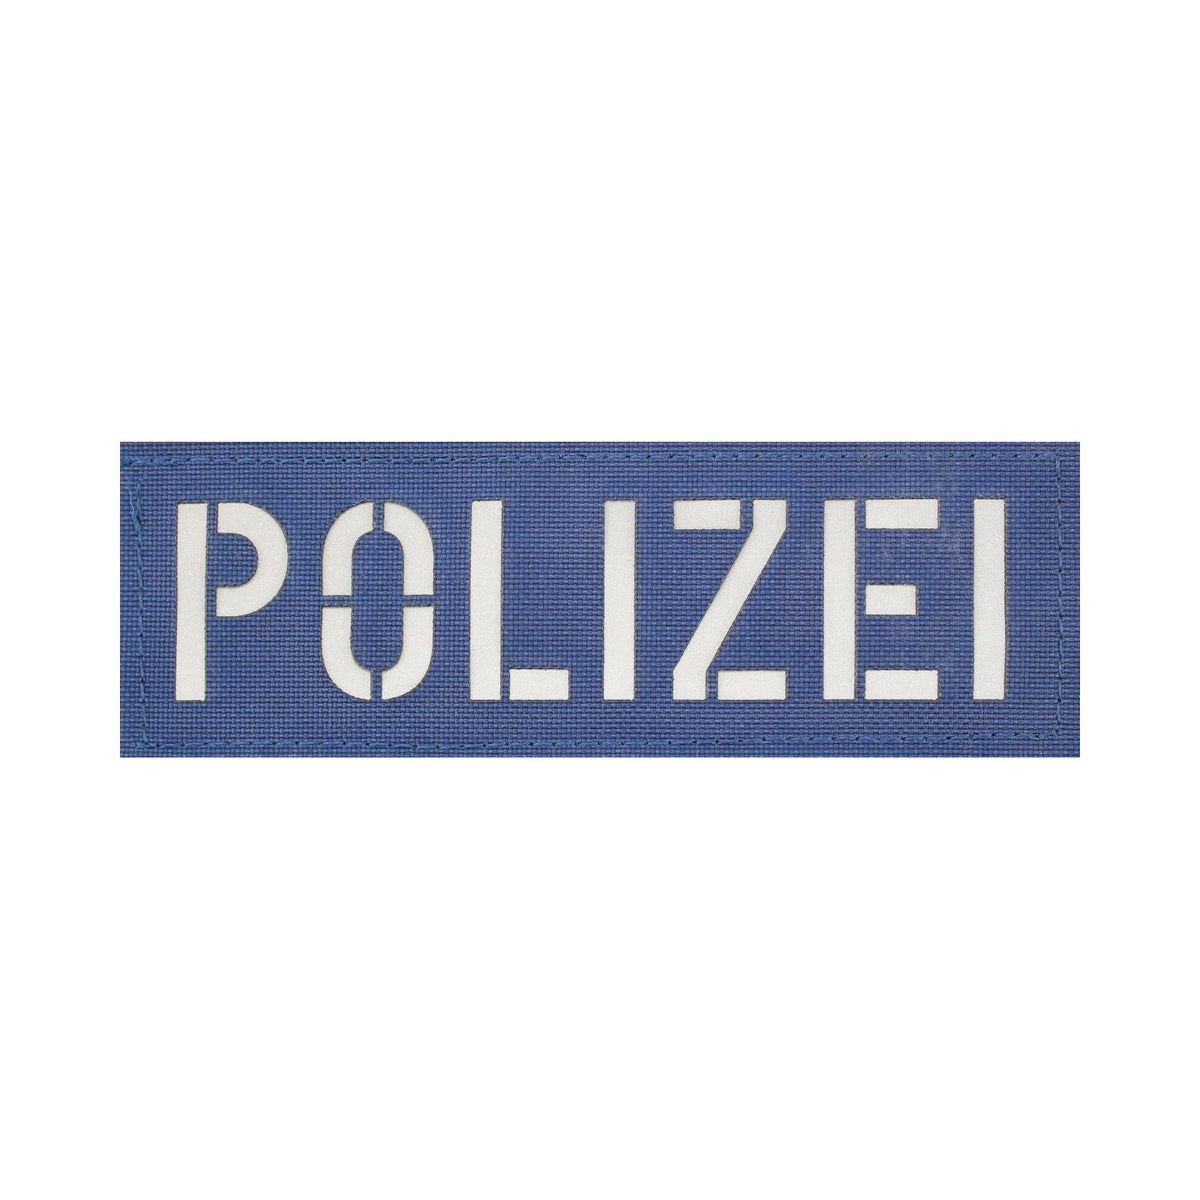 Polizei Patch groß  Zentauron Groß Dunkelblau - Silber Reflex 